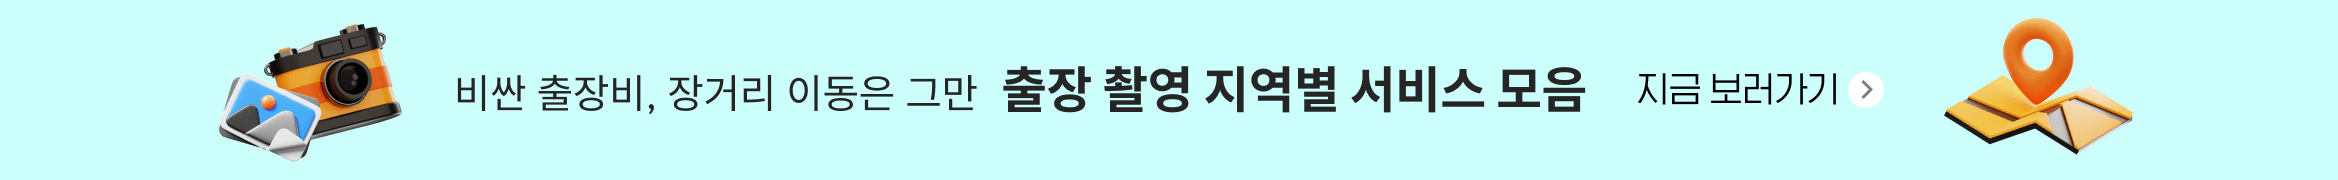 부산 경마시간표 hhn77.com 일본지방경마 서울경마 일본 온라인경마 ozEo 배너